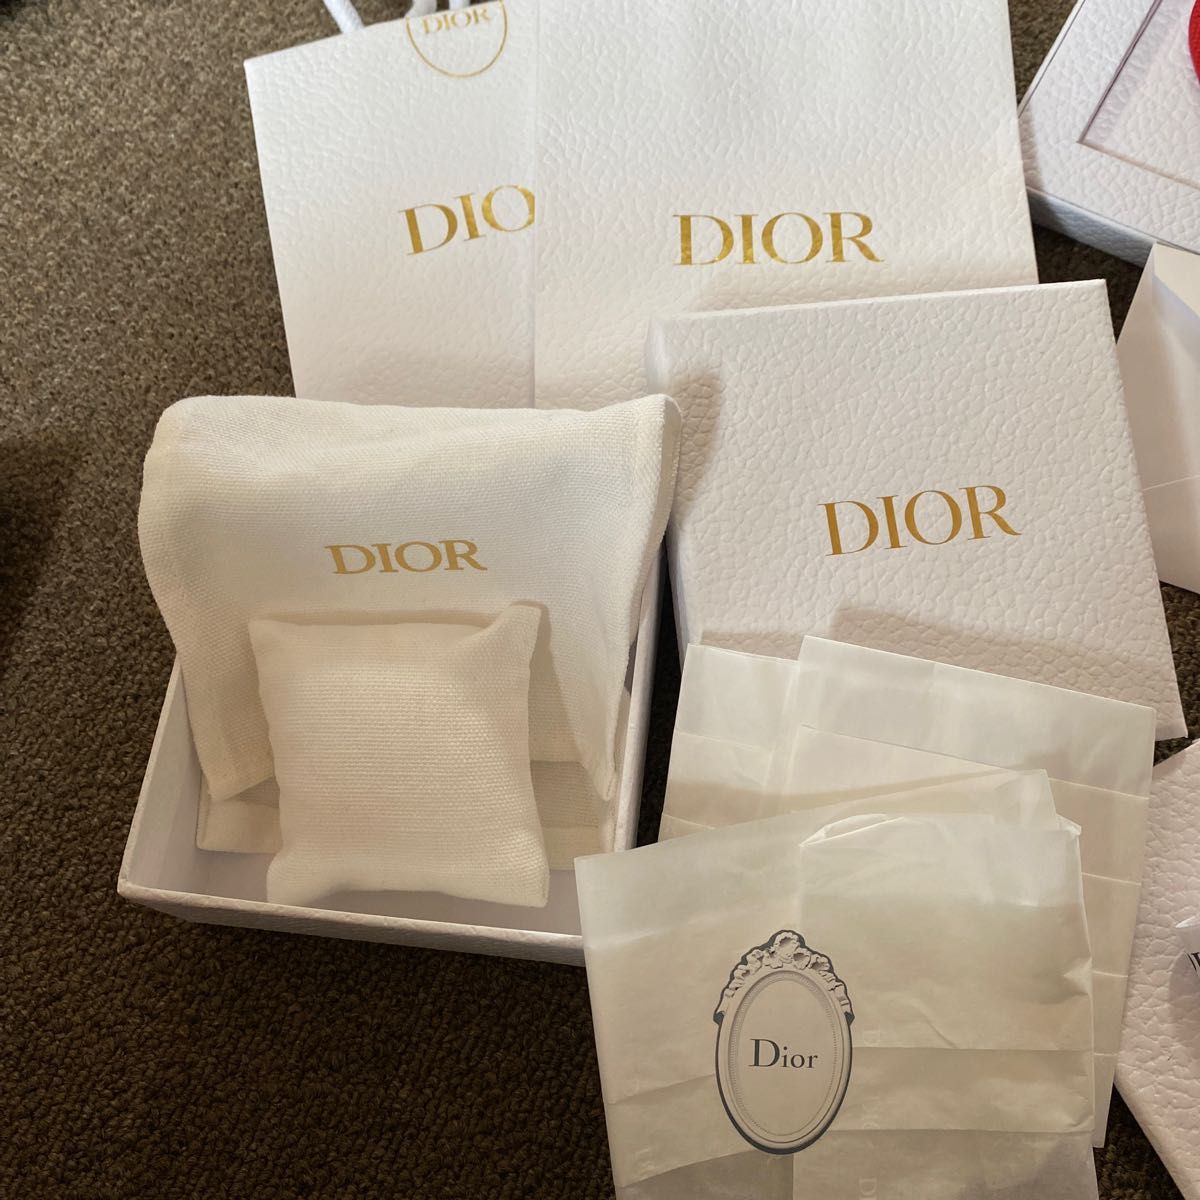 Dior ディオール ショップ袋 空箱ノベルティーセット